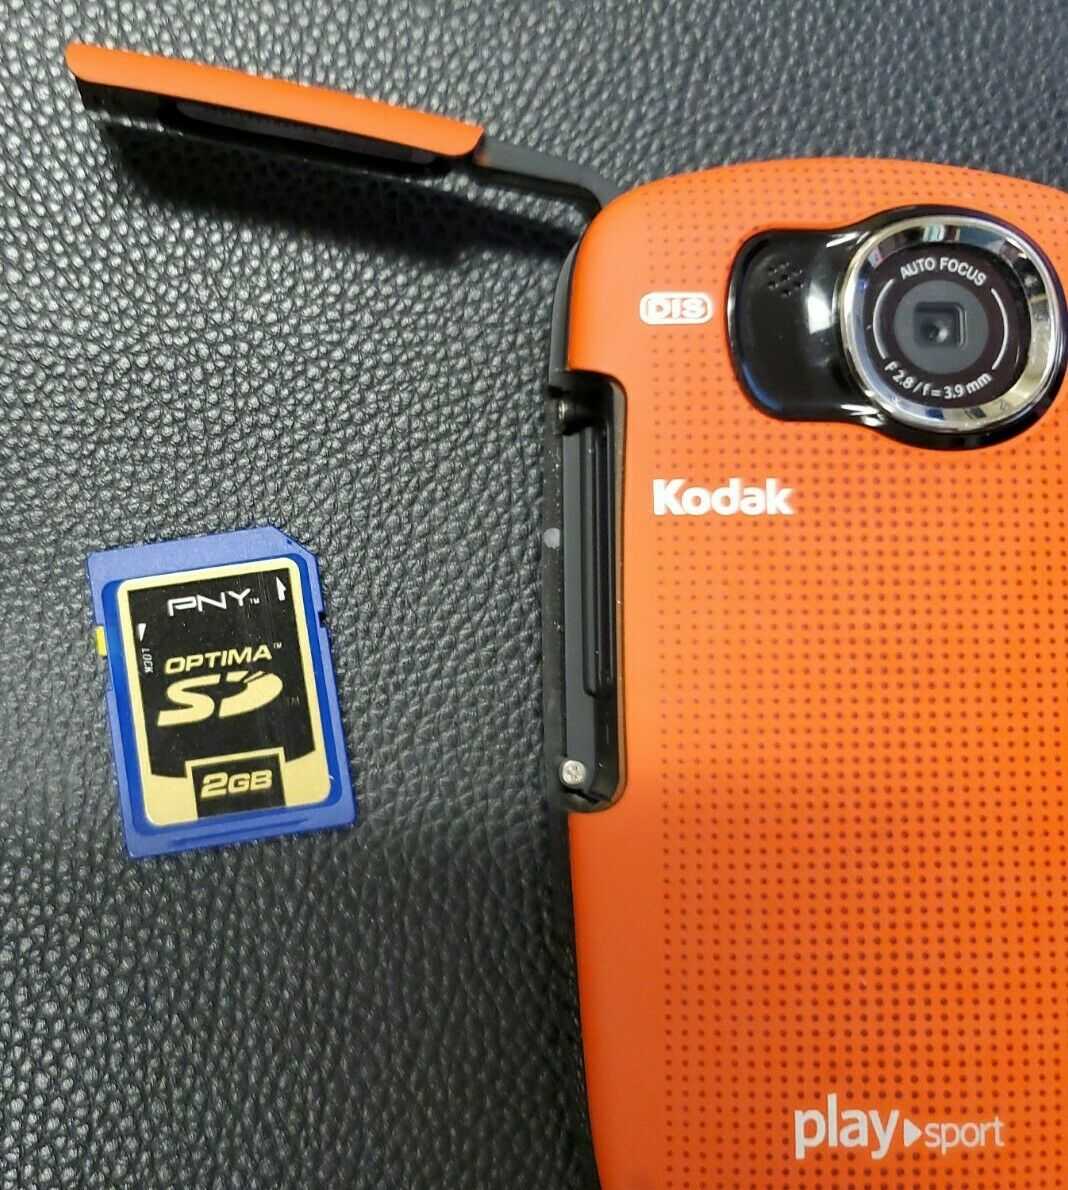 Kodak zx1 купить по акционной цене , отзывы и обзоры.